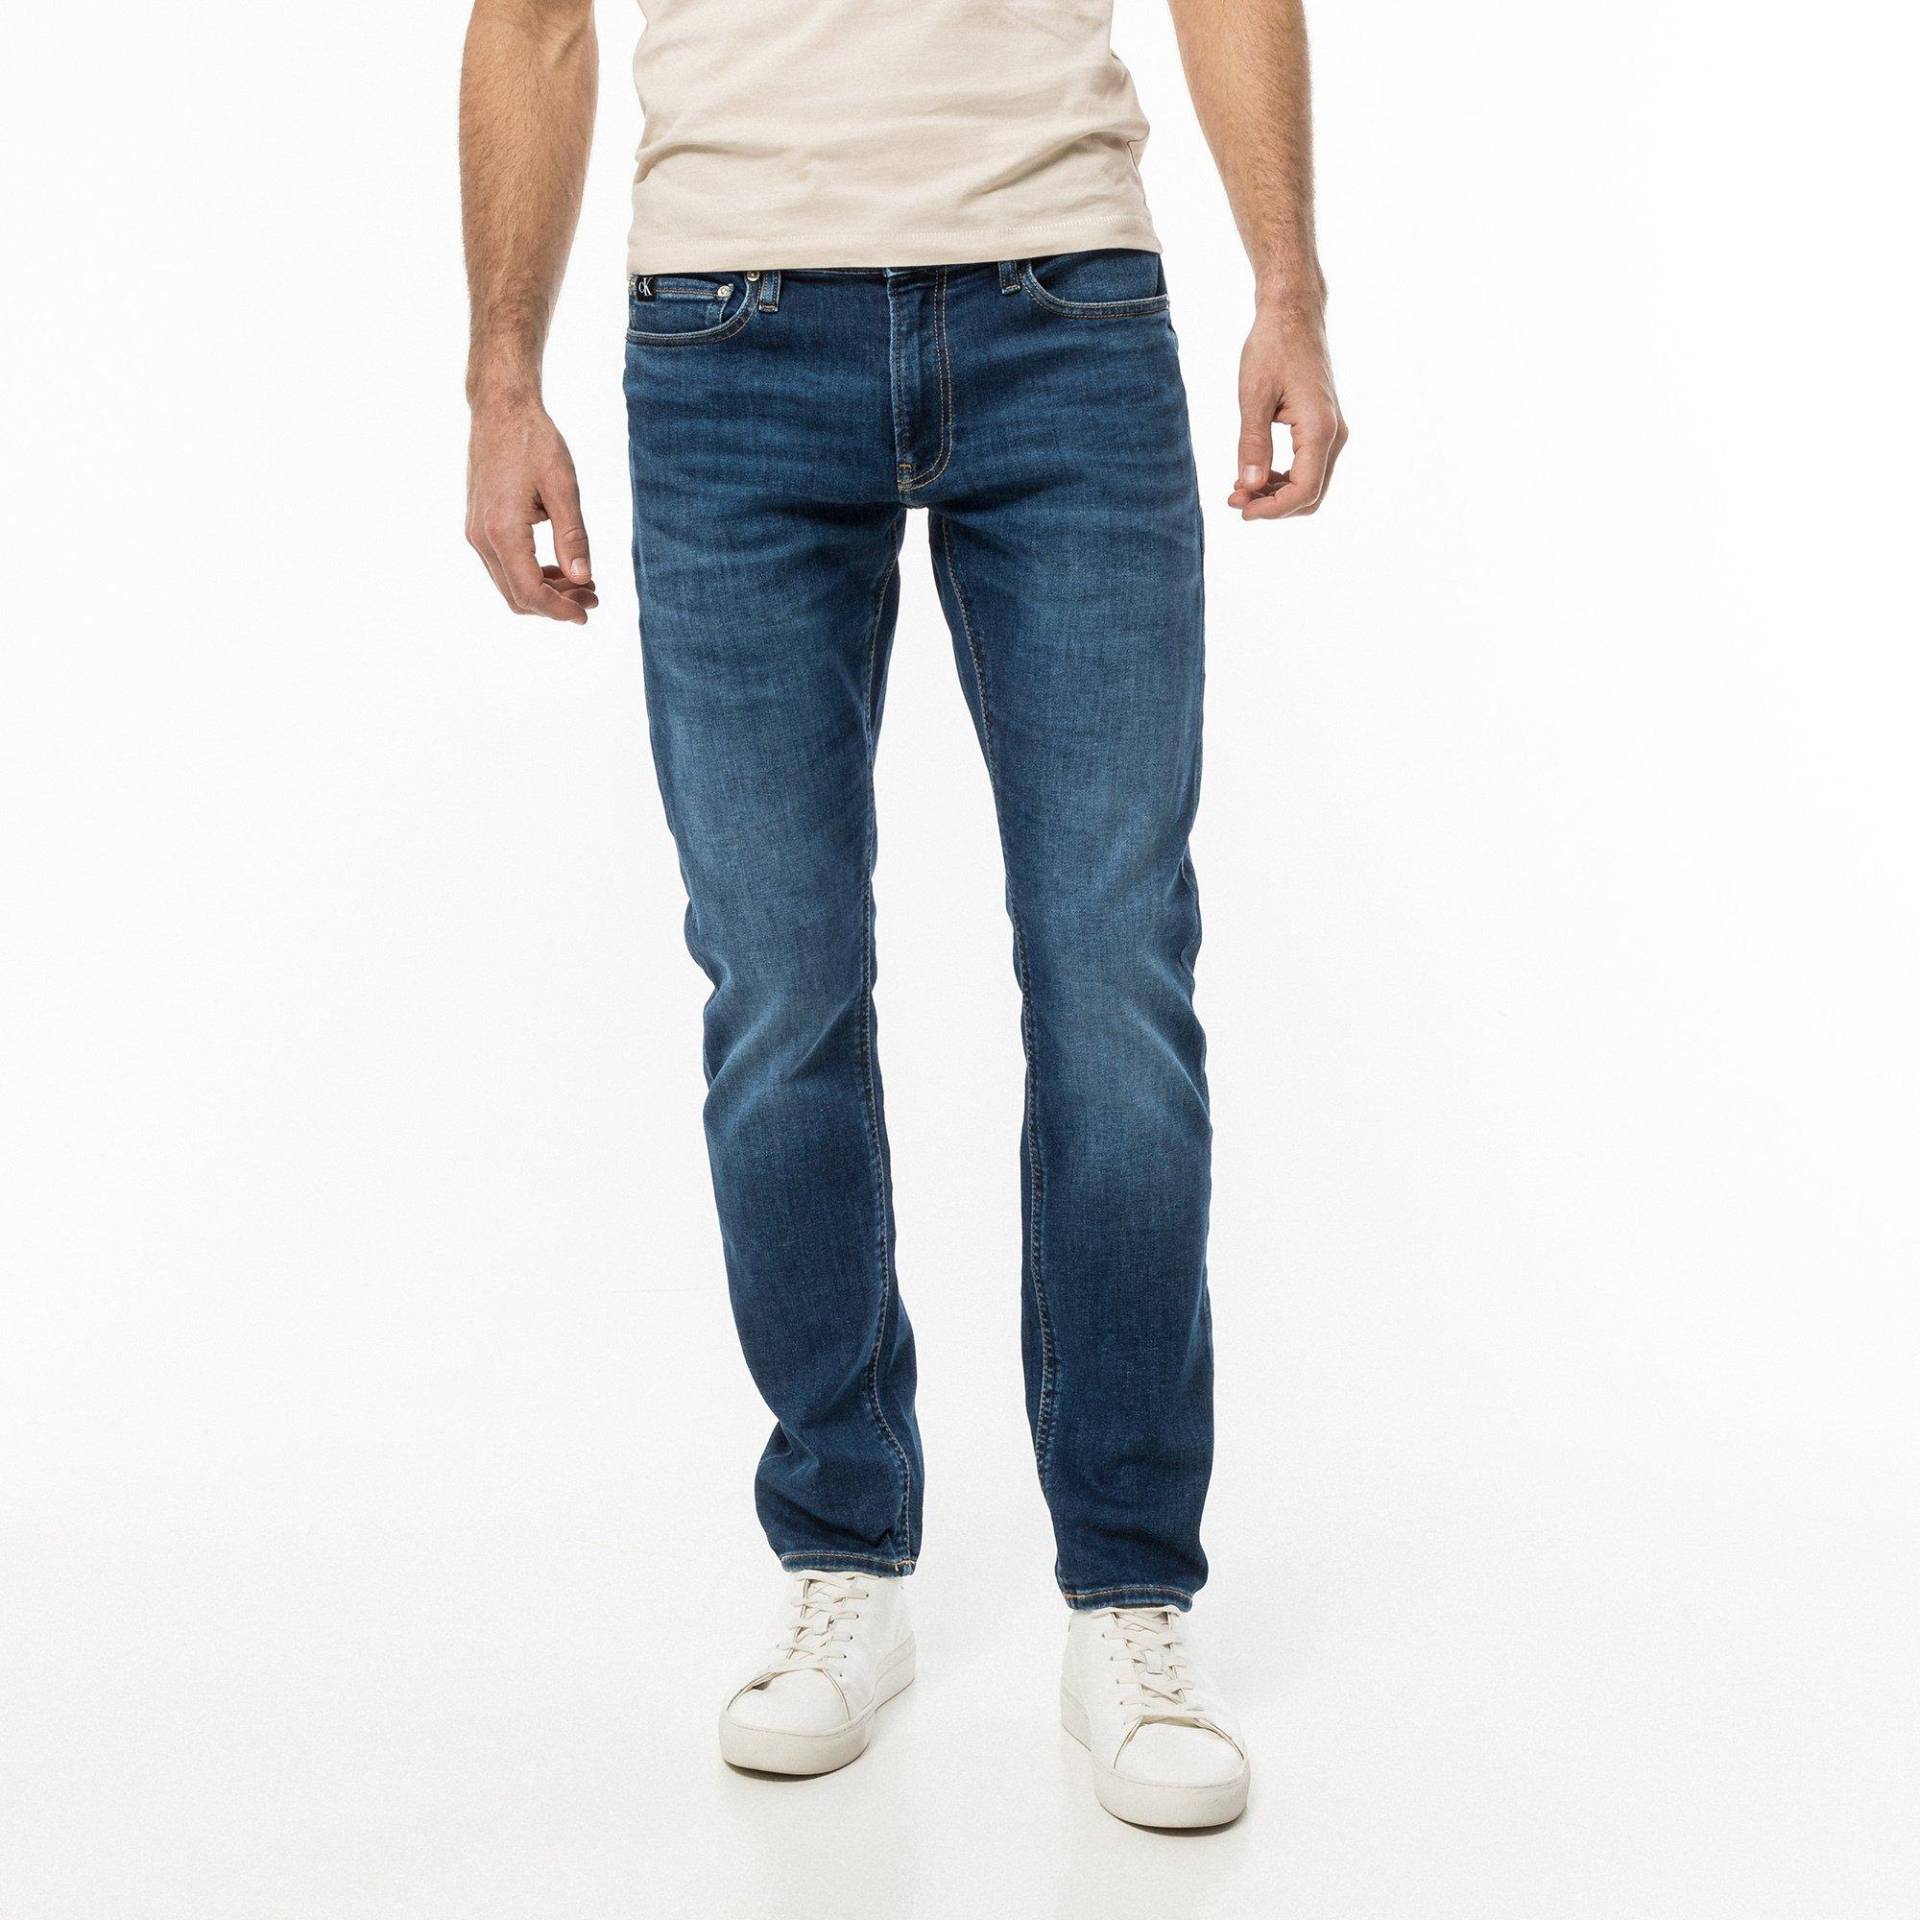 Jeans, Slim Fit Herren Dunkelblau L34/W32 von Calvin Klein Jeans